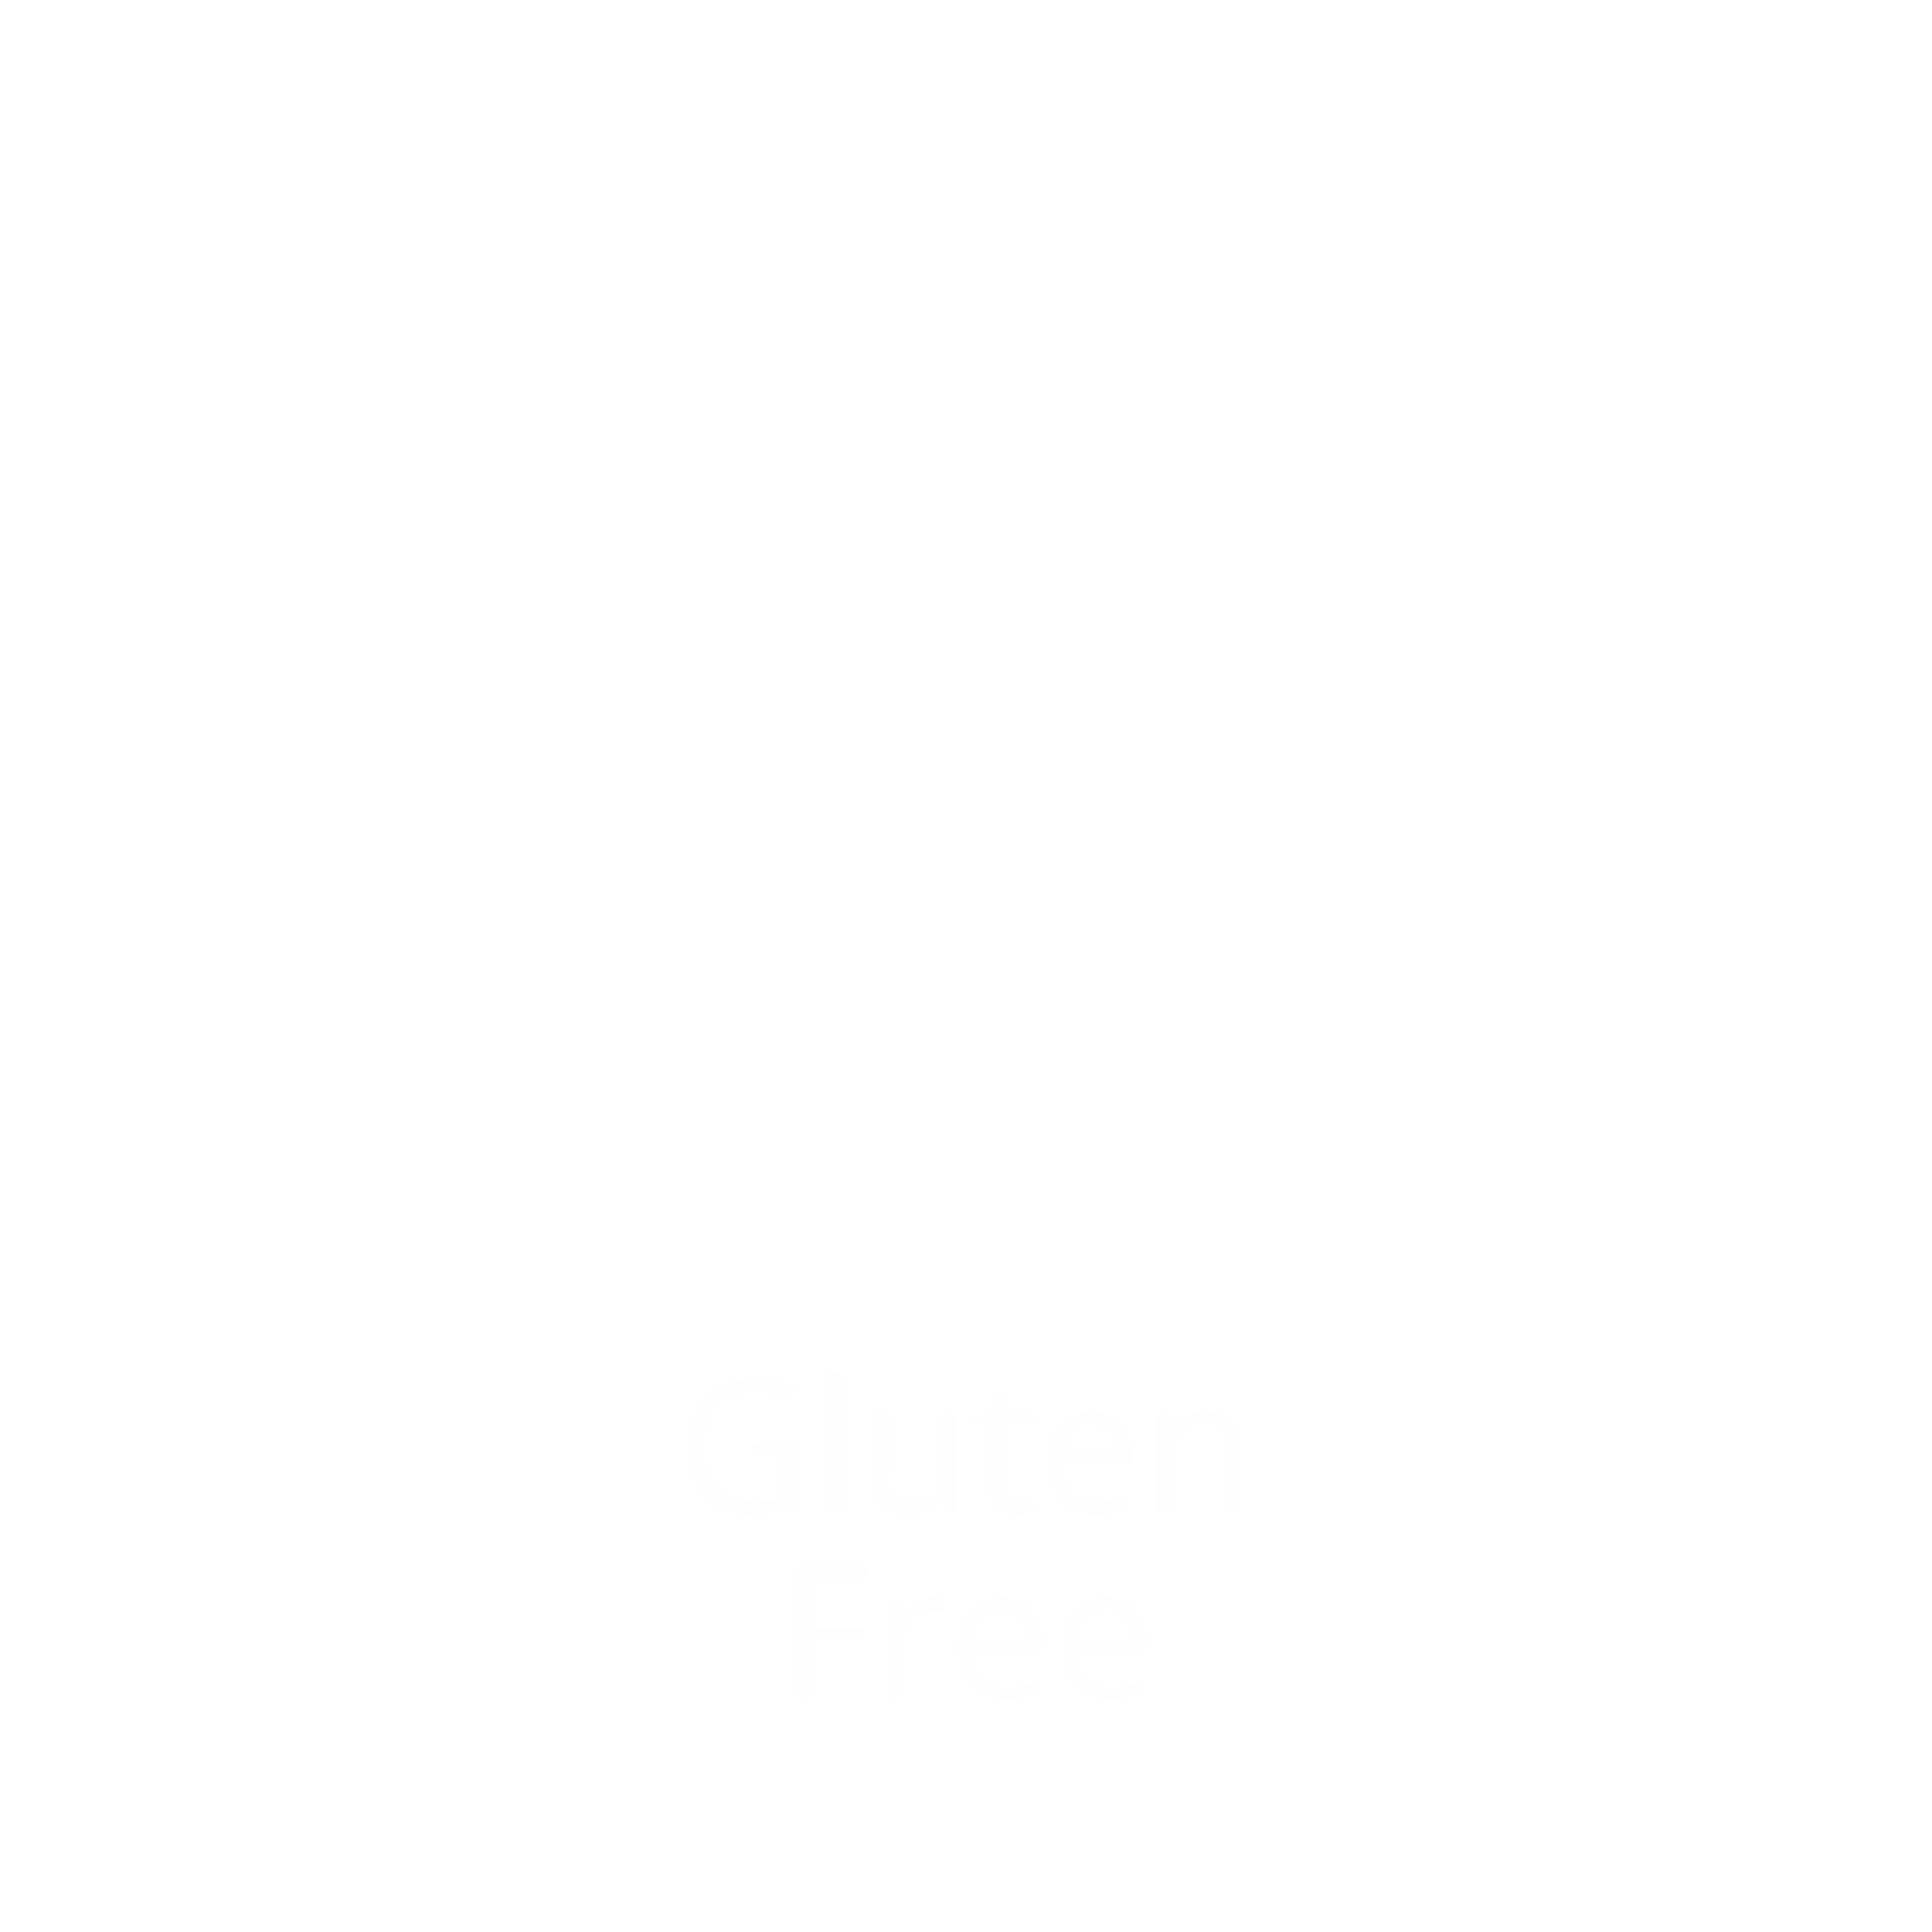 gluten-free health drink